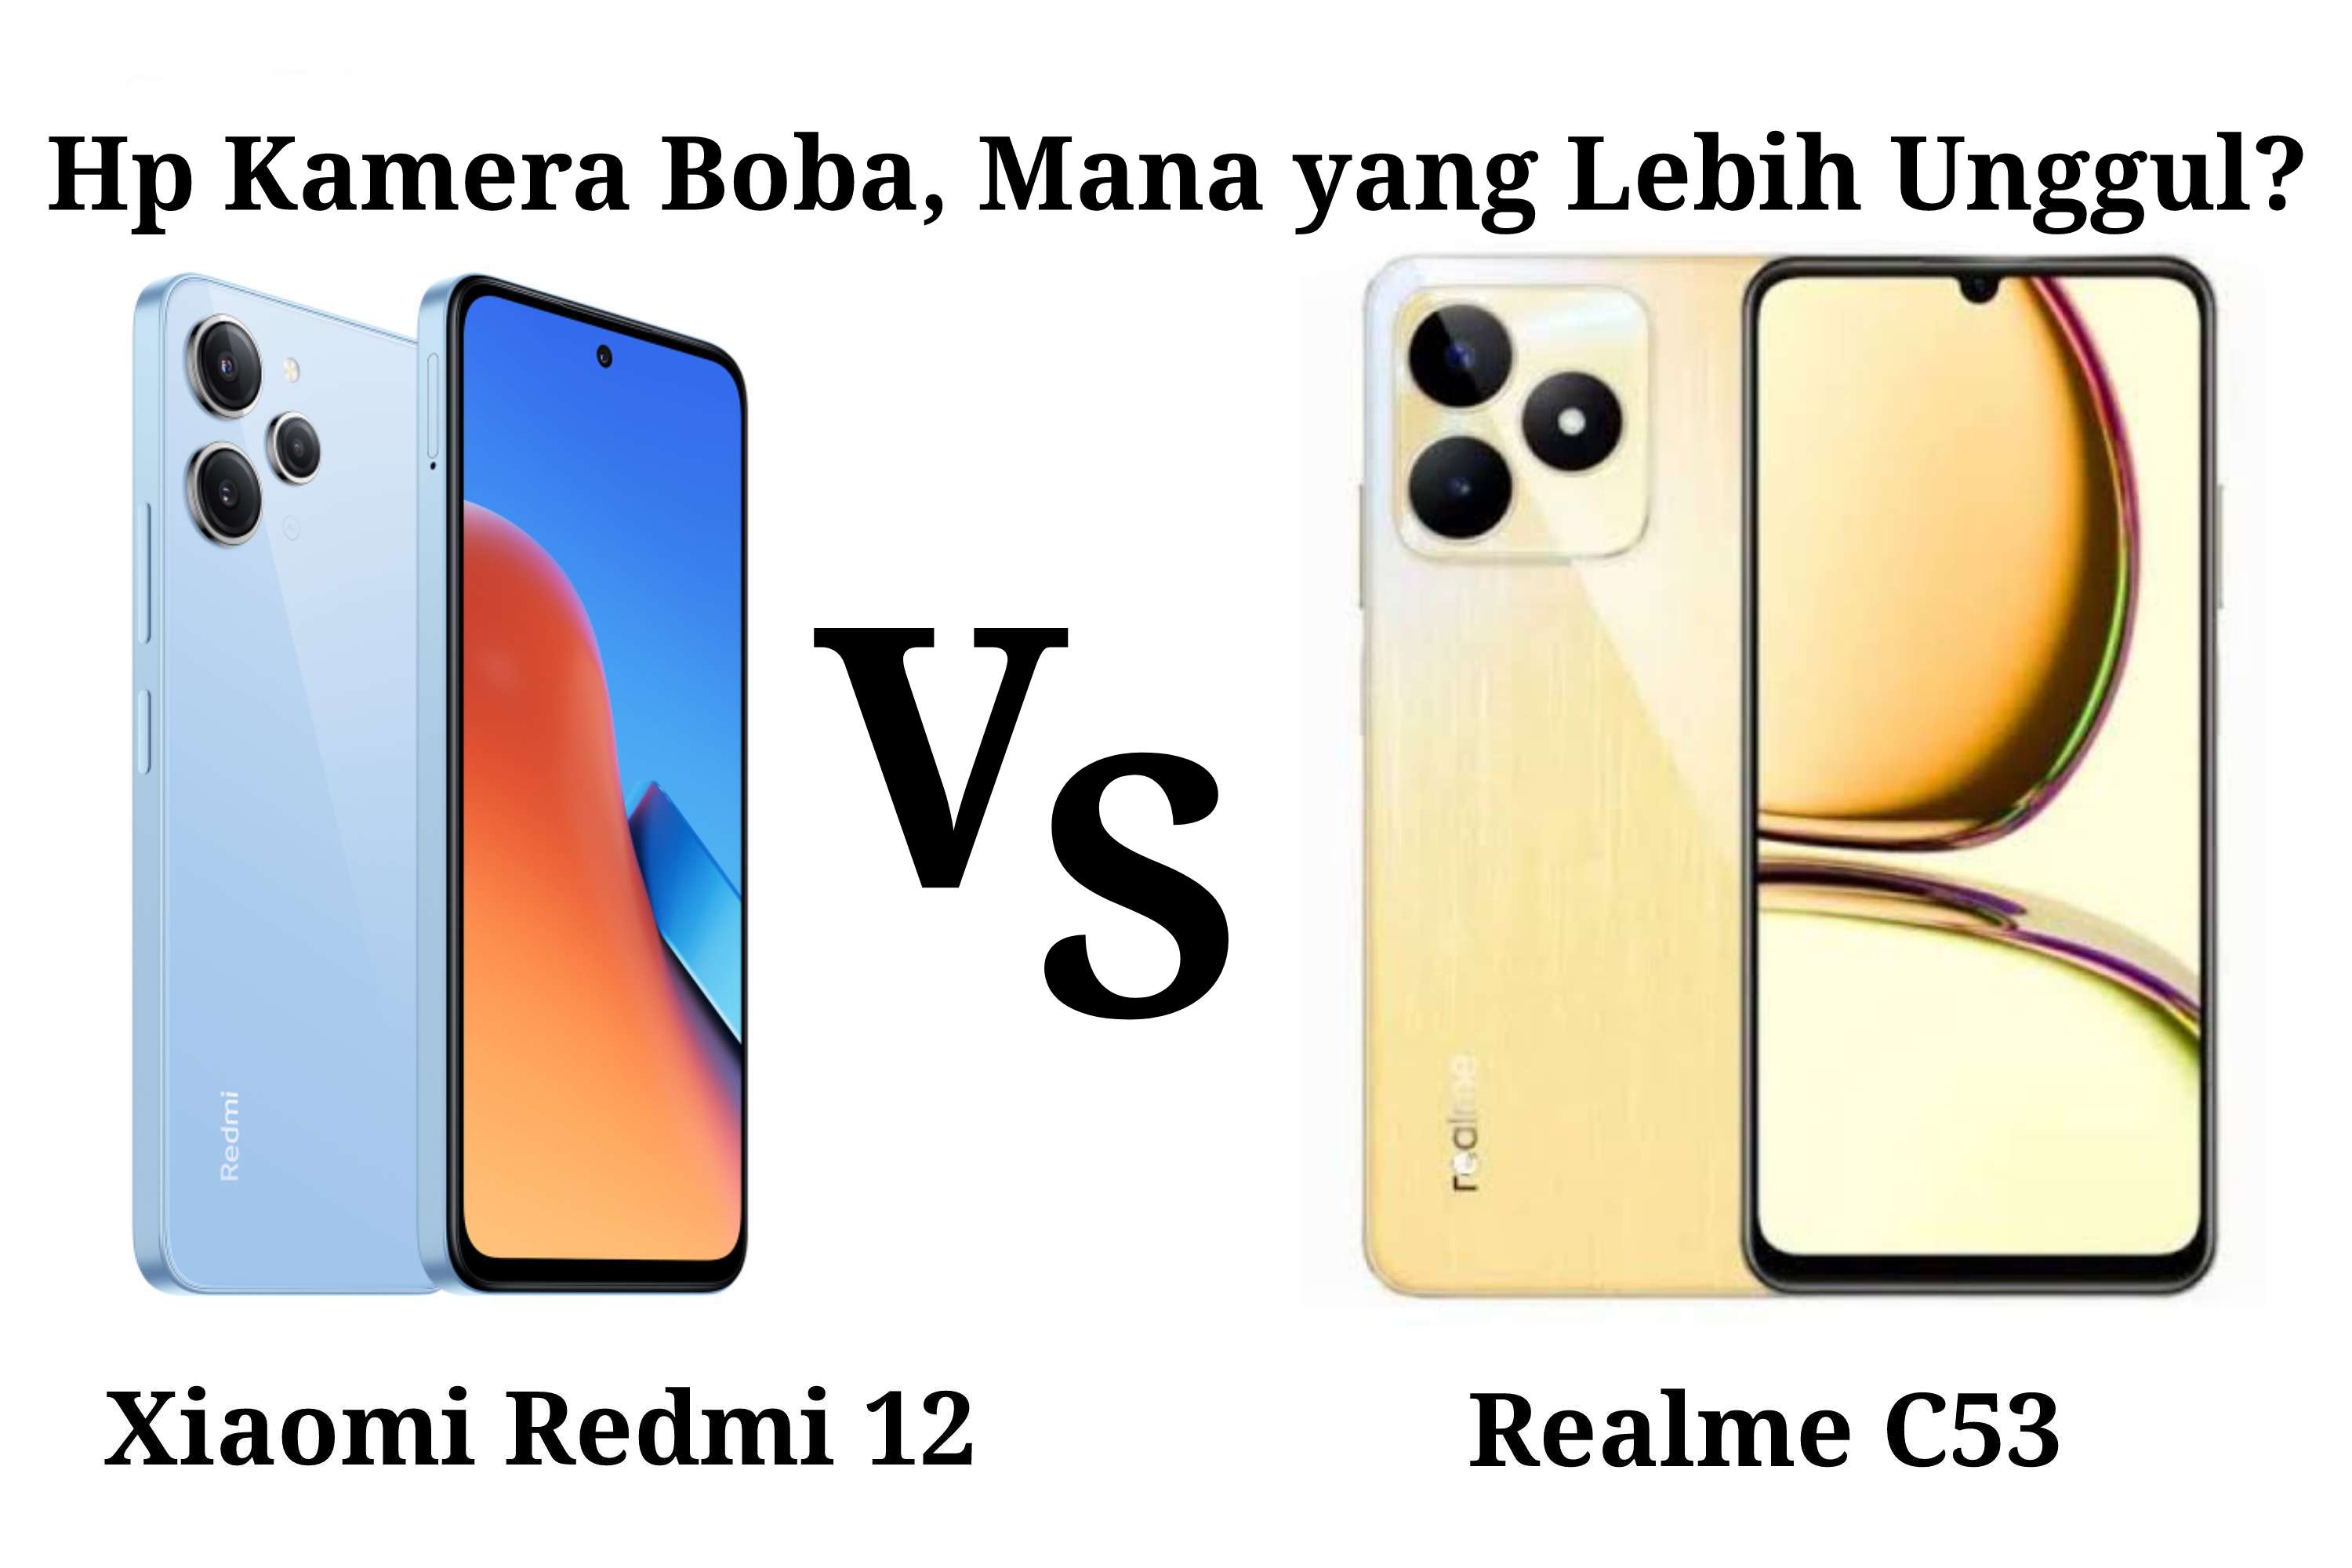 Hp Kamera Boba Selisih 100 Ribu, Mana yang Lebih Unggul Antara Xiaomi Redmi 12 VS Realme C53?